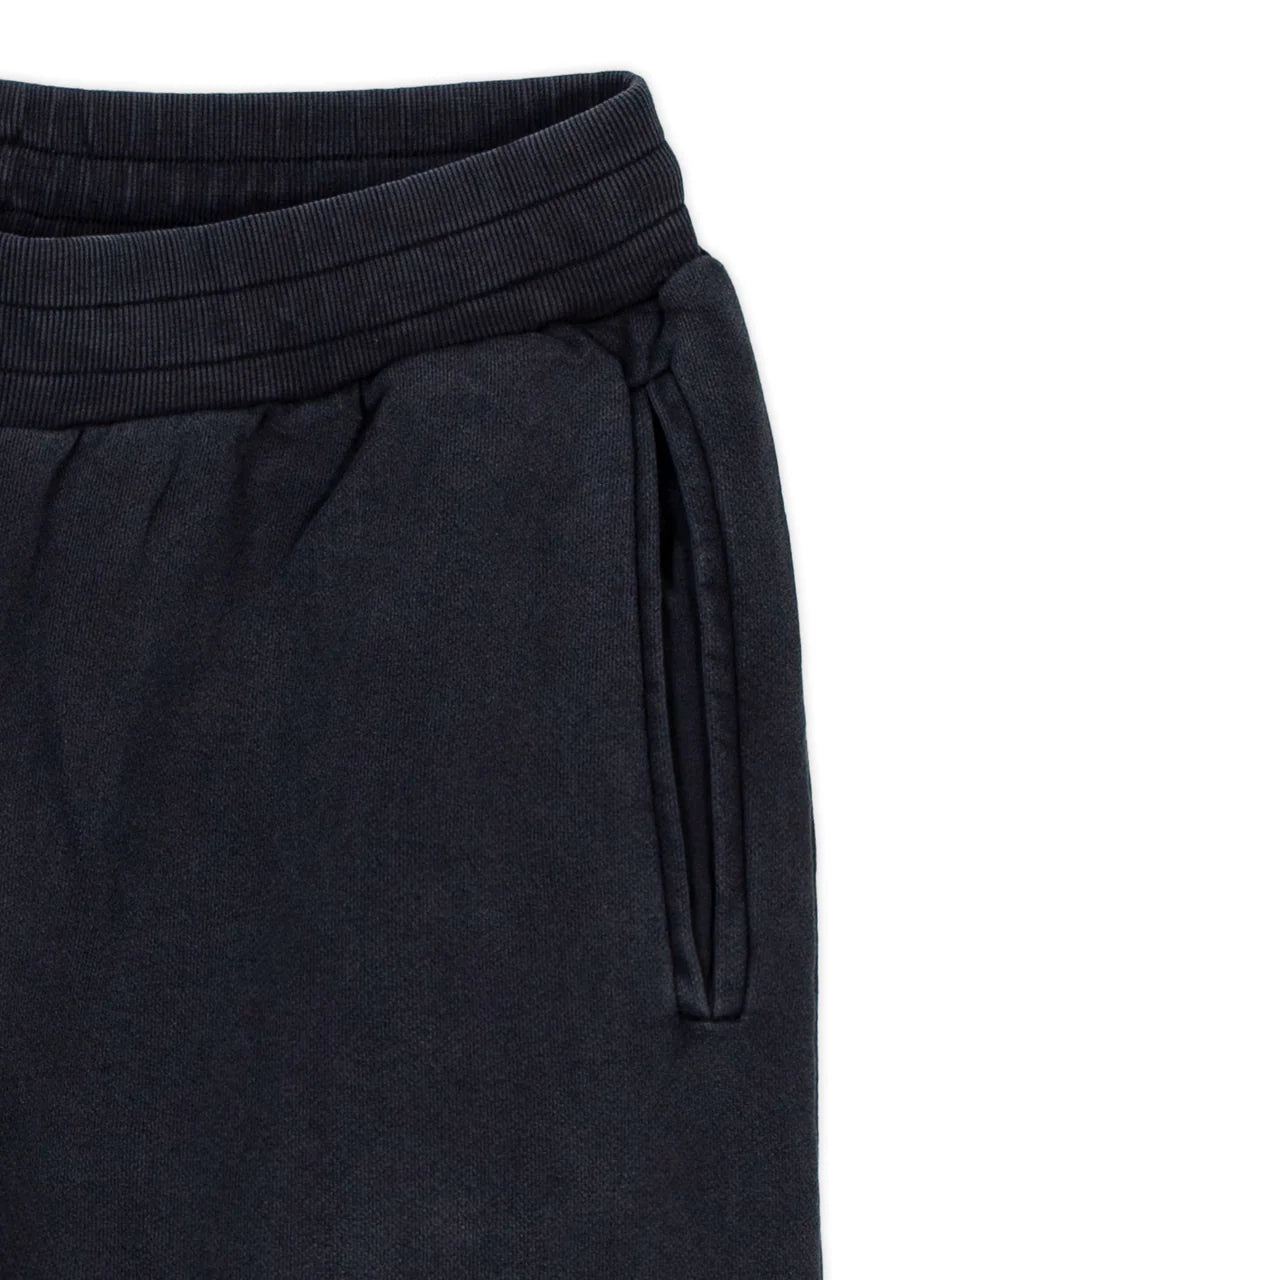 FPAC Vintage Sweatpants - Pigment Black